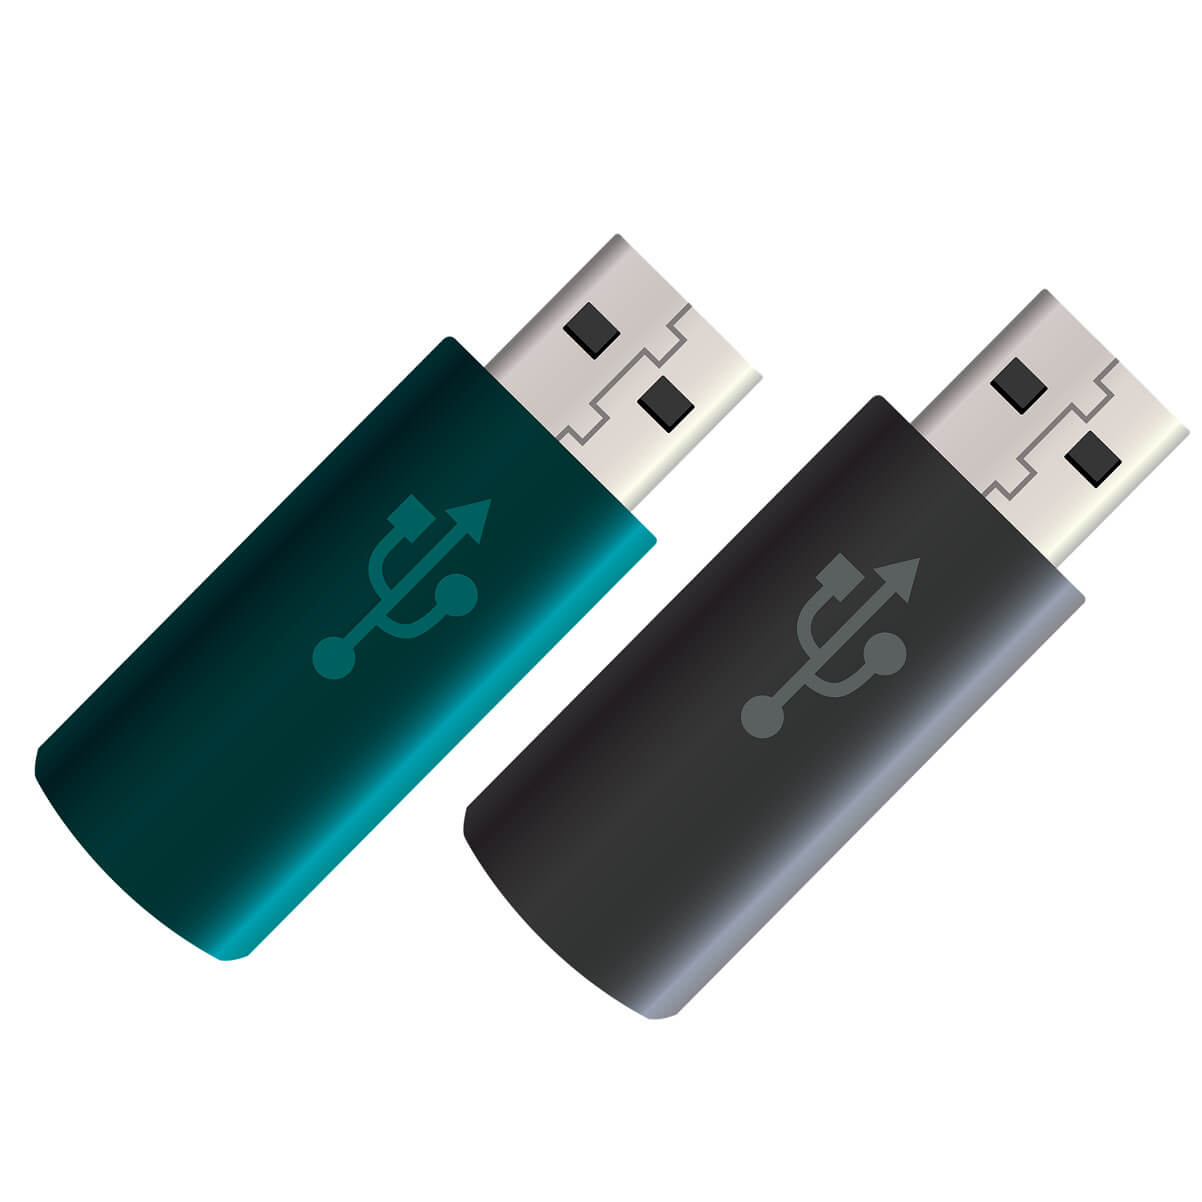 multiboot USB drive tools